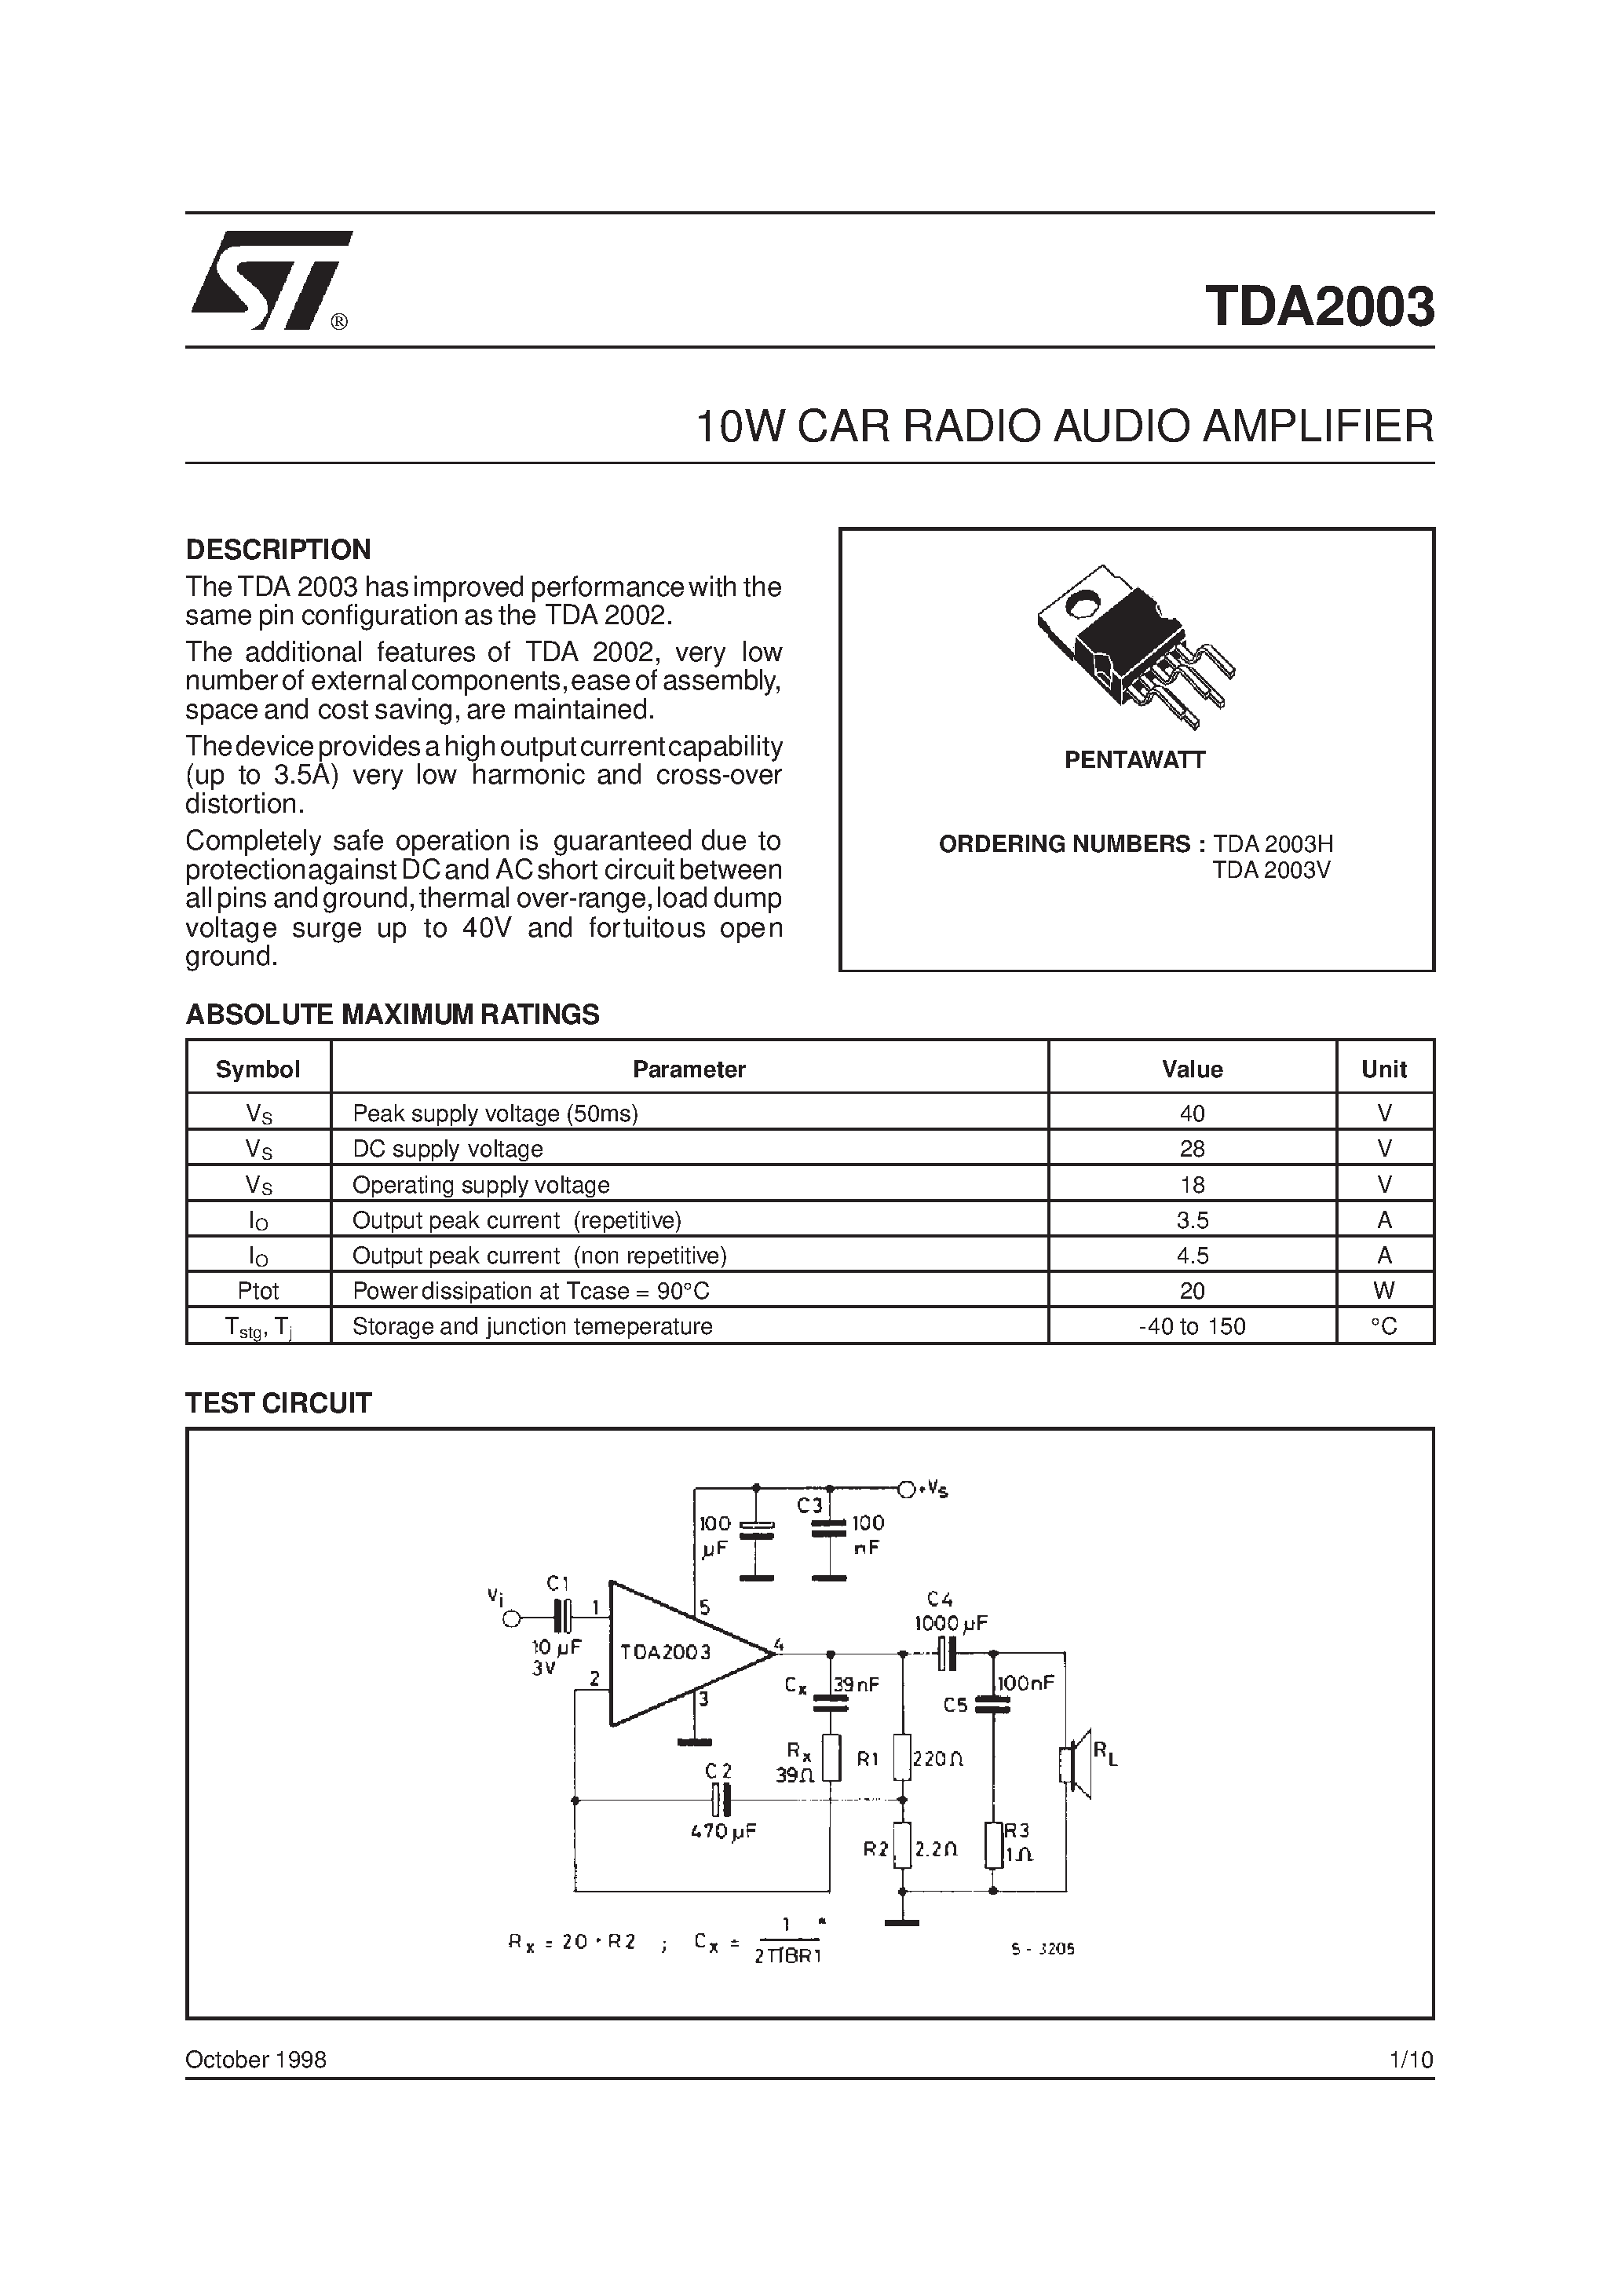 Даташит TDA2003 - 10W CAR RADIO AUDIO AMPLIFIER страница 1